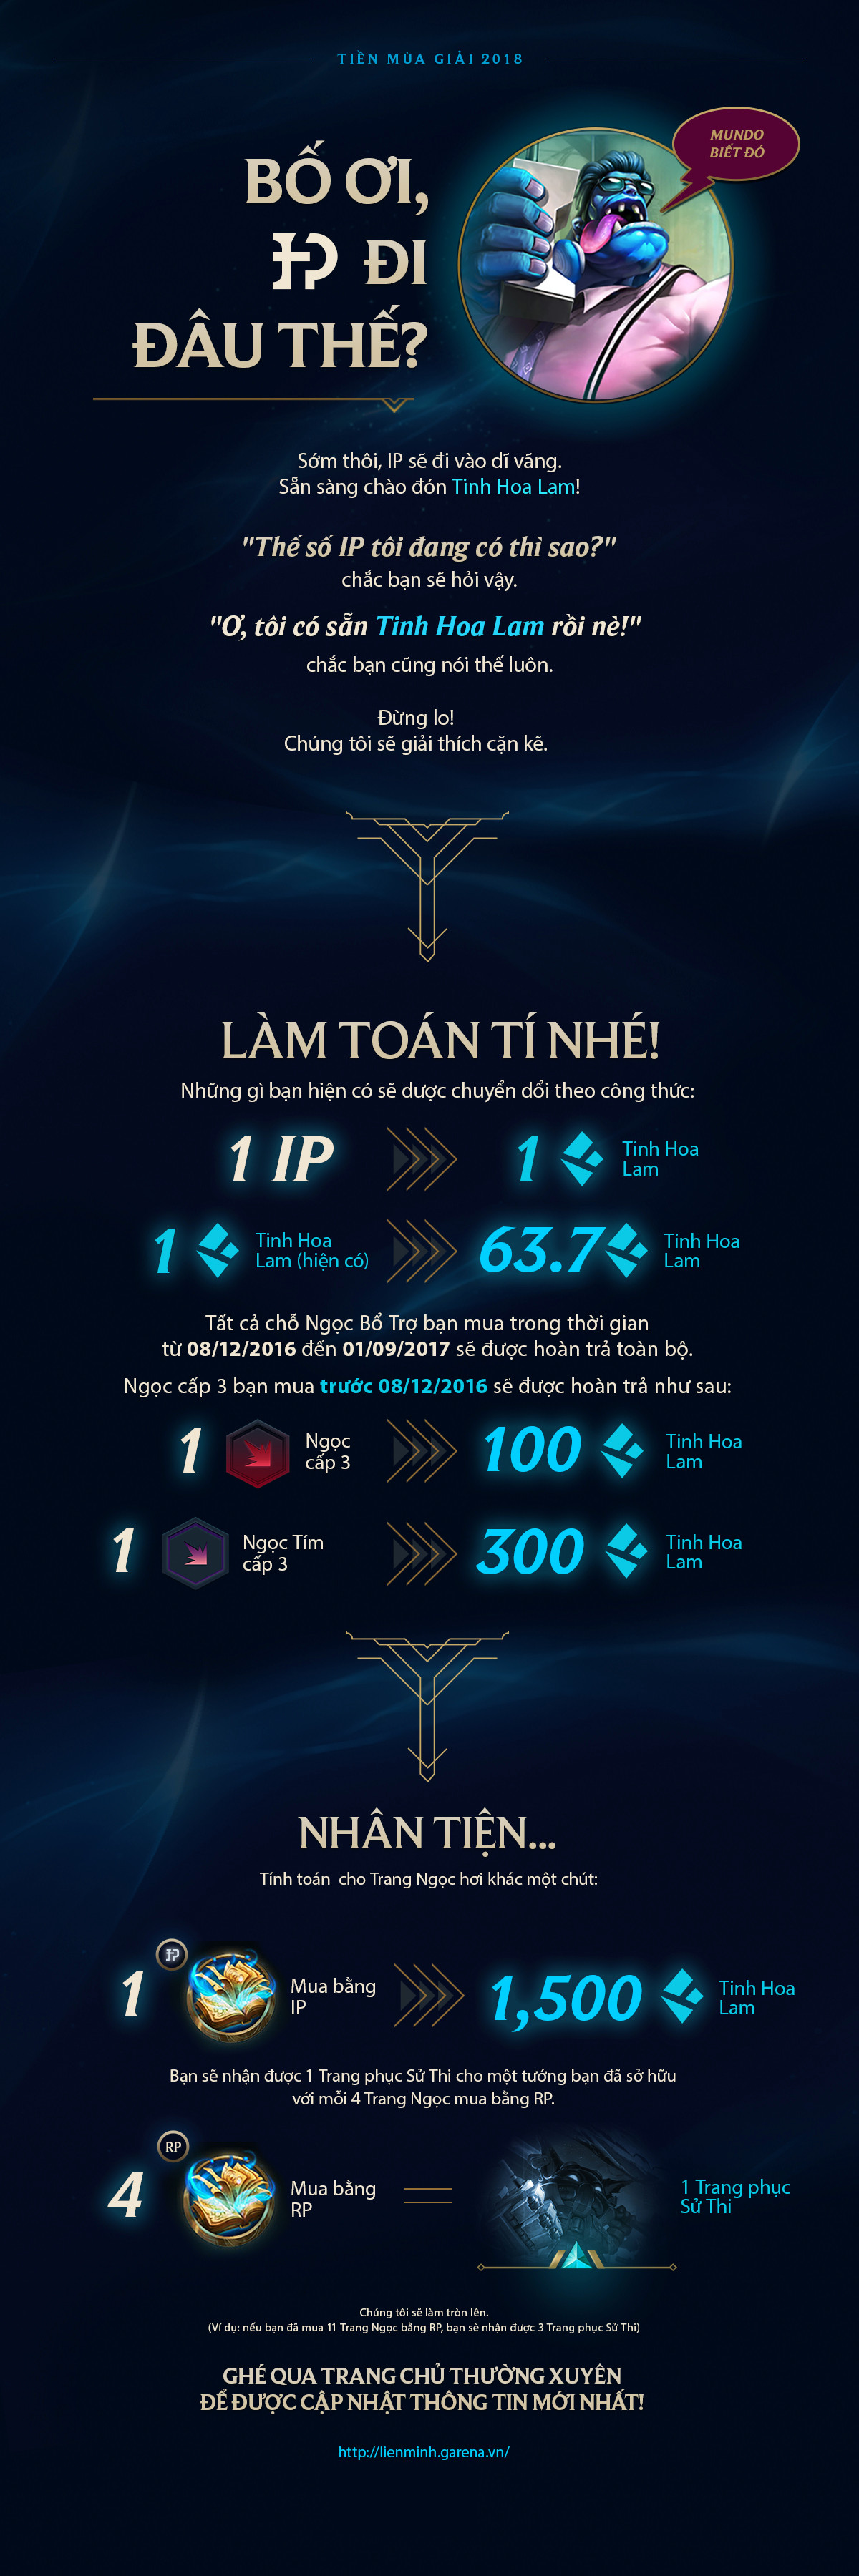 Riot chính thức công bố tỷ lệ quy đổi ngọc, bảng bổ trợ và IP sang Tinh Hoa Lam